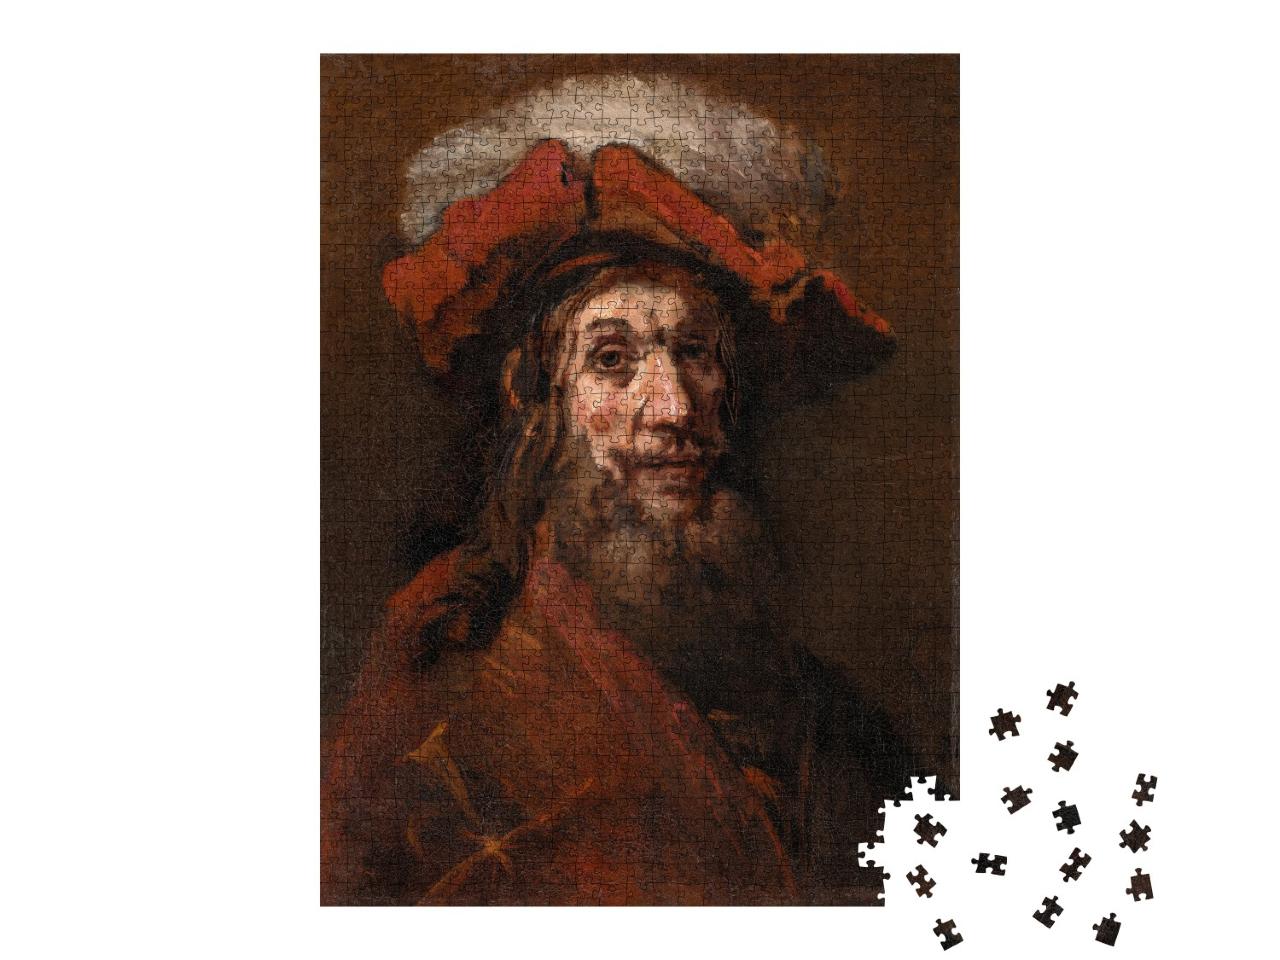 Puzzle de 1000 pièces « Rembrandt - Le croisé »